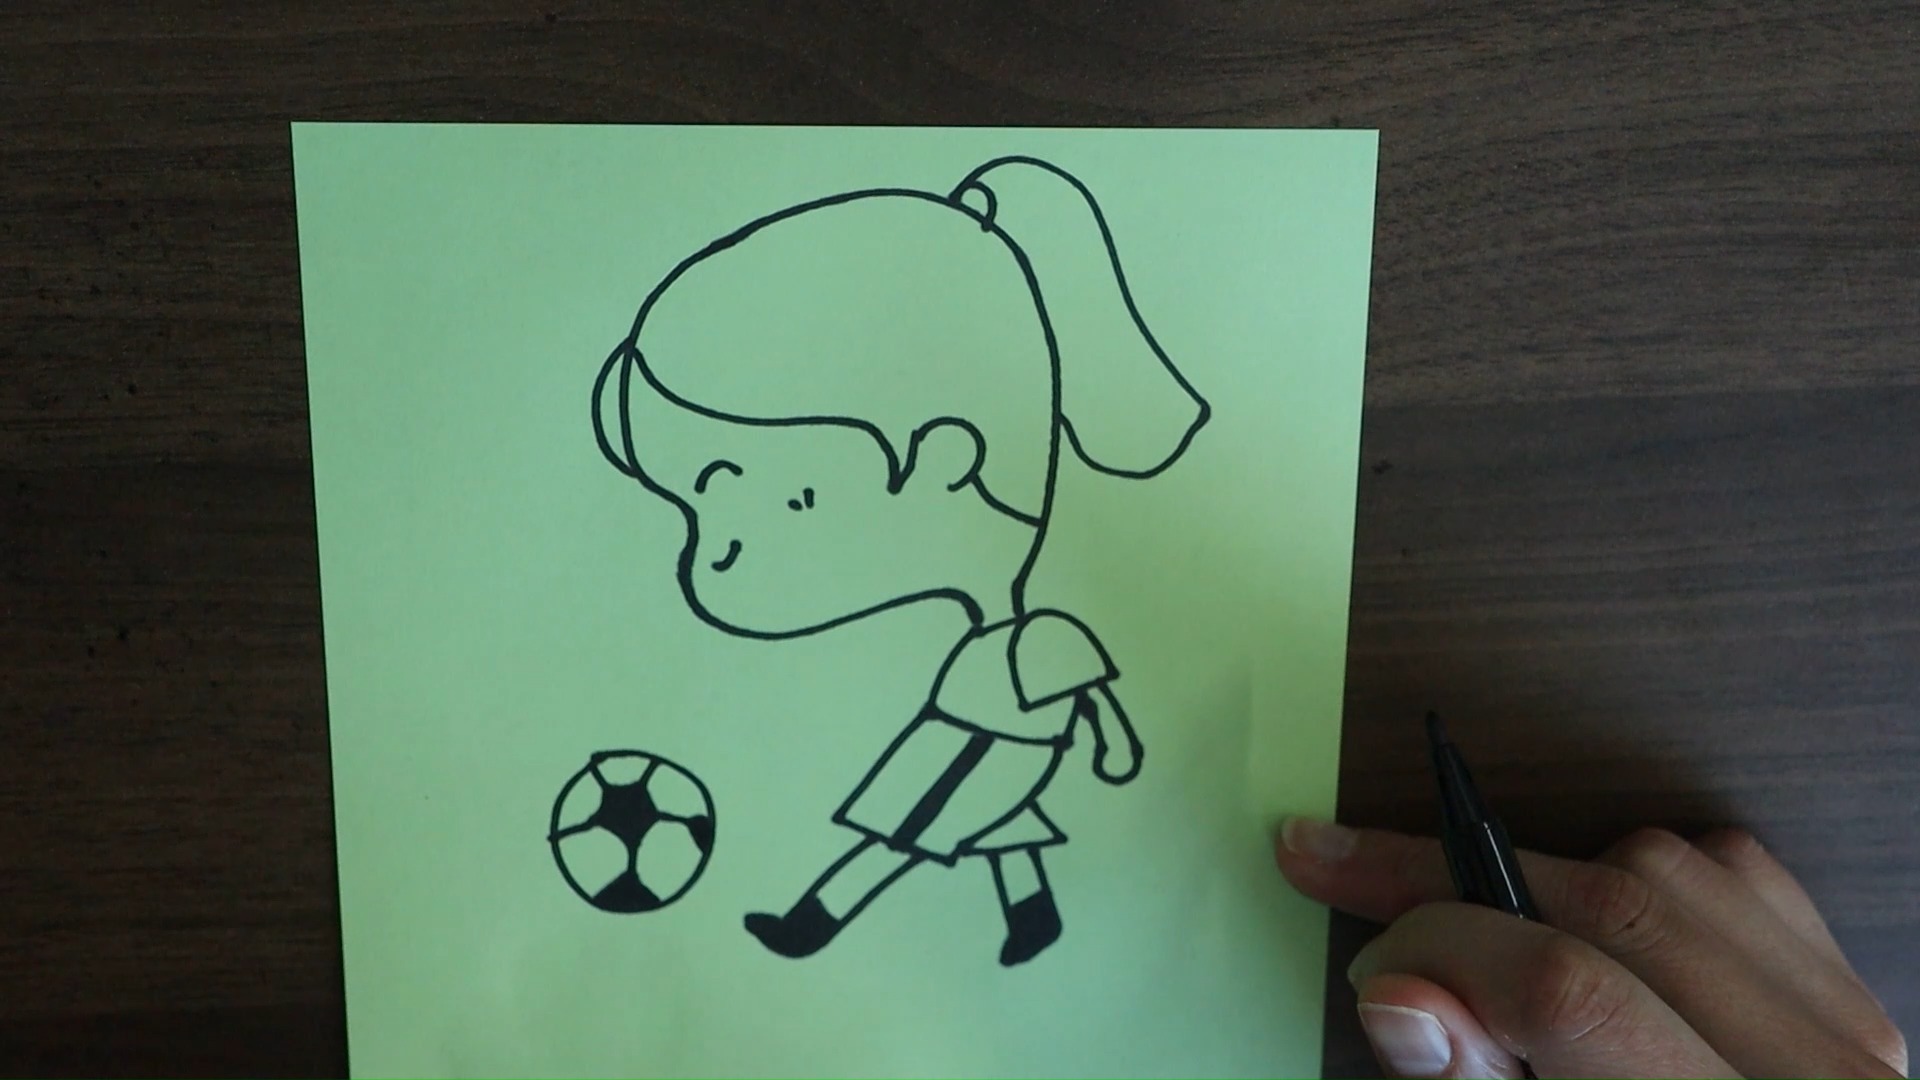 踢足球的简笔画如何画?